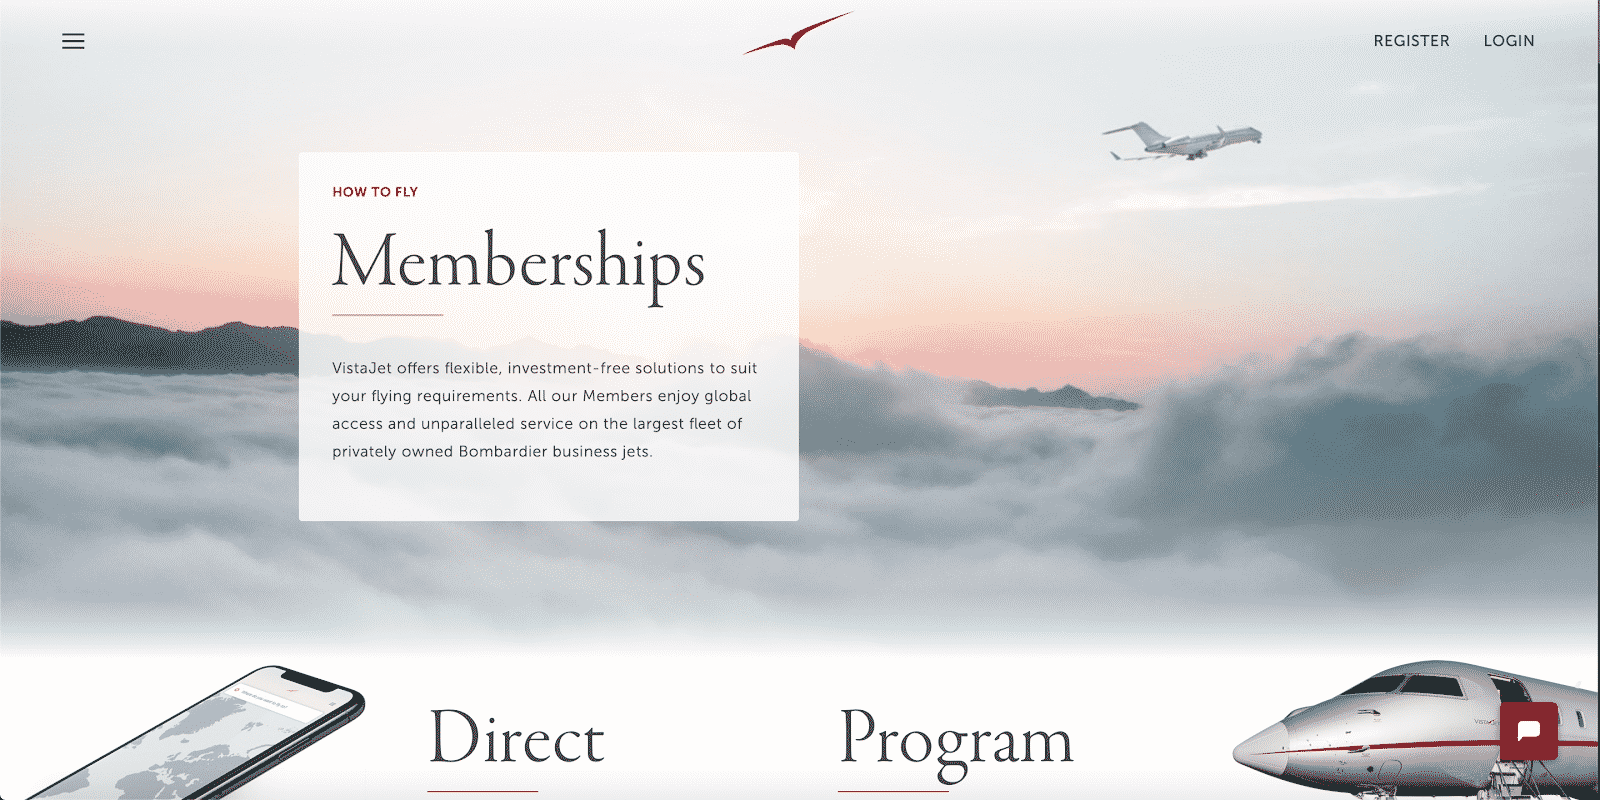 The VistaJet membership page